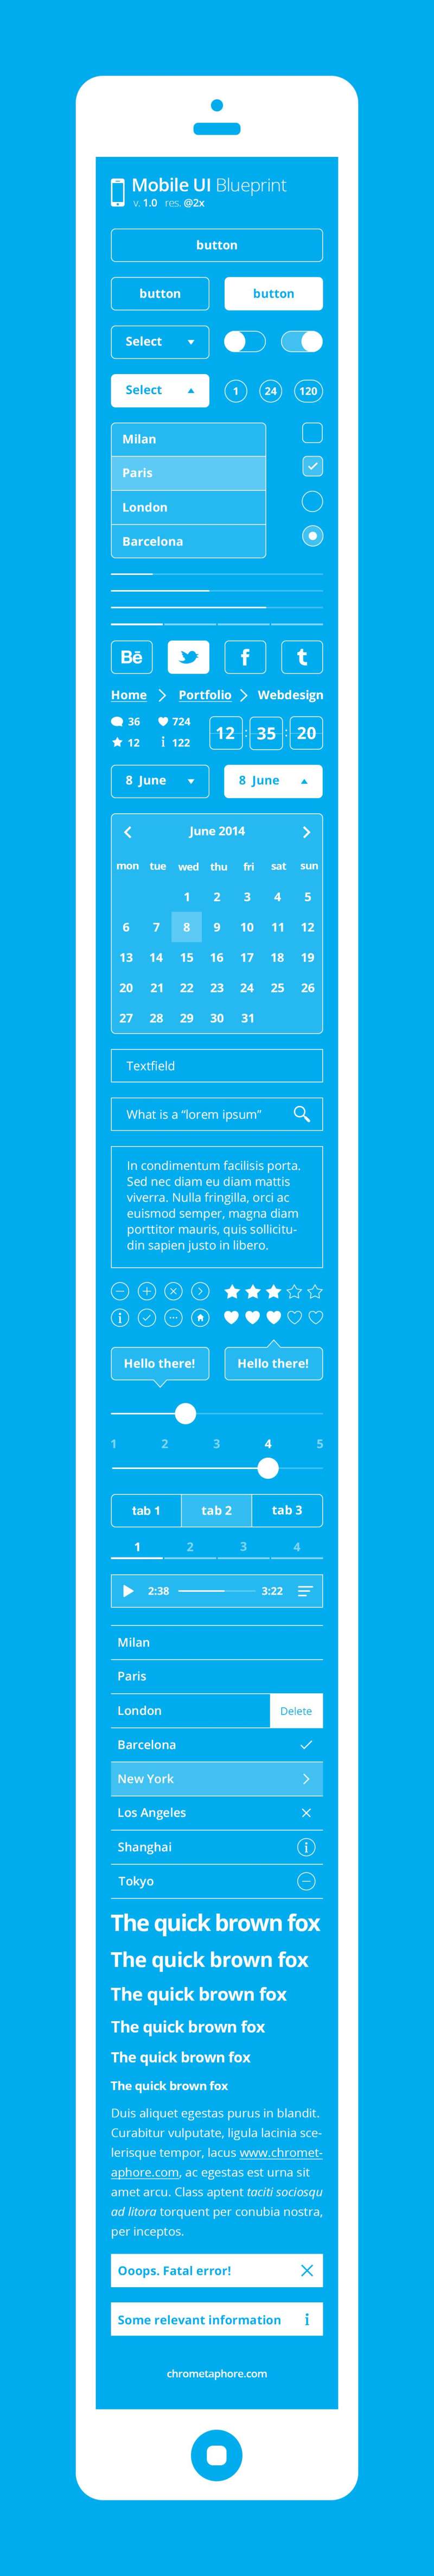 扁平化风格的iphone UI界面设计元素psd线性素材下载